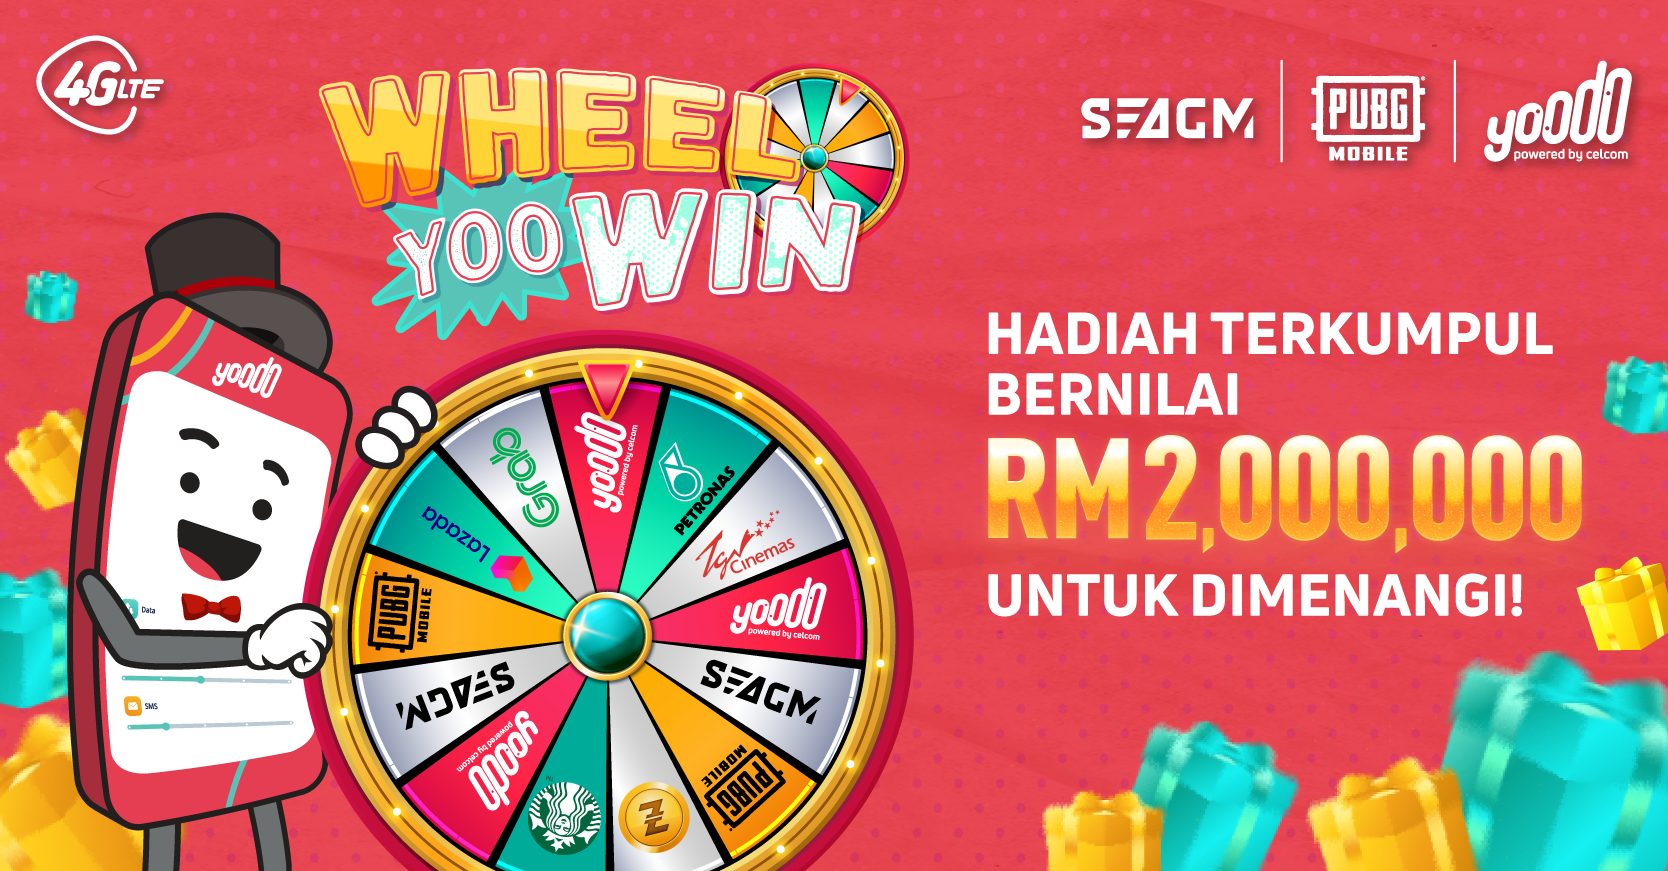 Sertai Wheel-Yoo-Win dari Yoodo dan Menang Pelbagai Hadiah Menarik Bernilai Lebih RM2 Juta